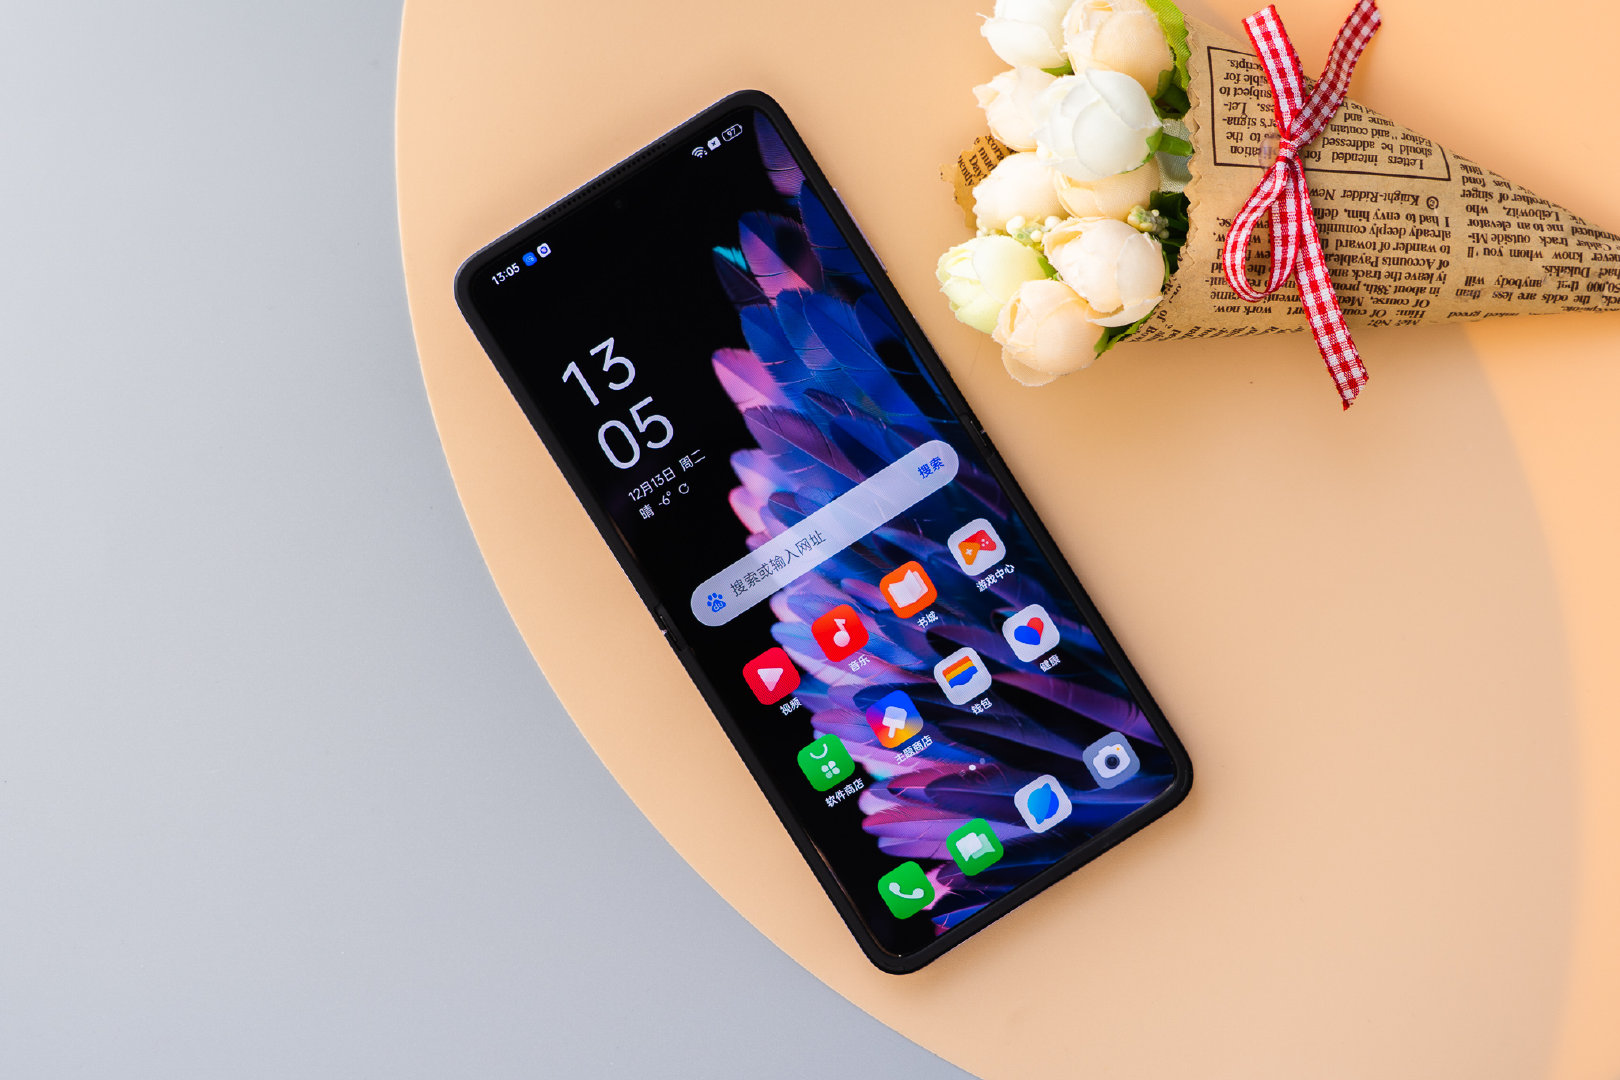 Thị trường smartphone Việt sắp chào đón smartphone màn hình gập vỏ sò hoàn toàn mới - Ảnh 5.